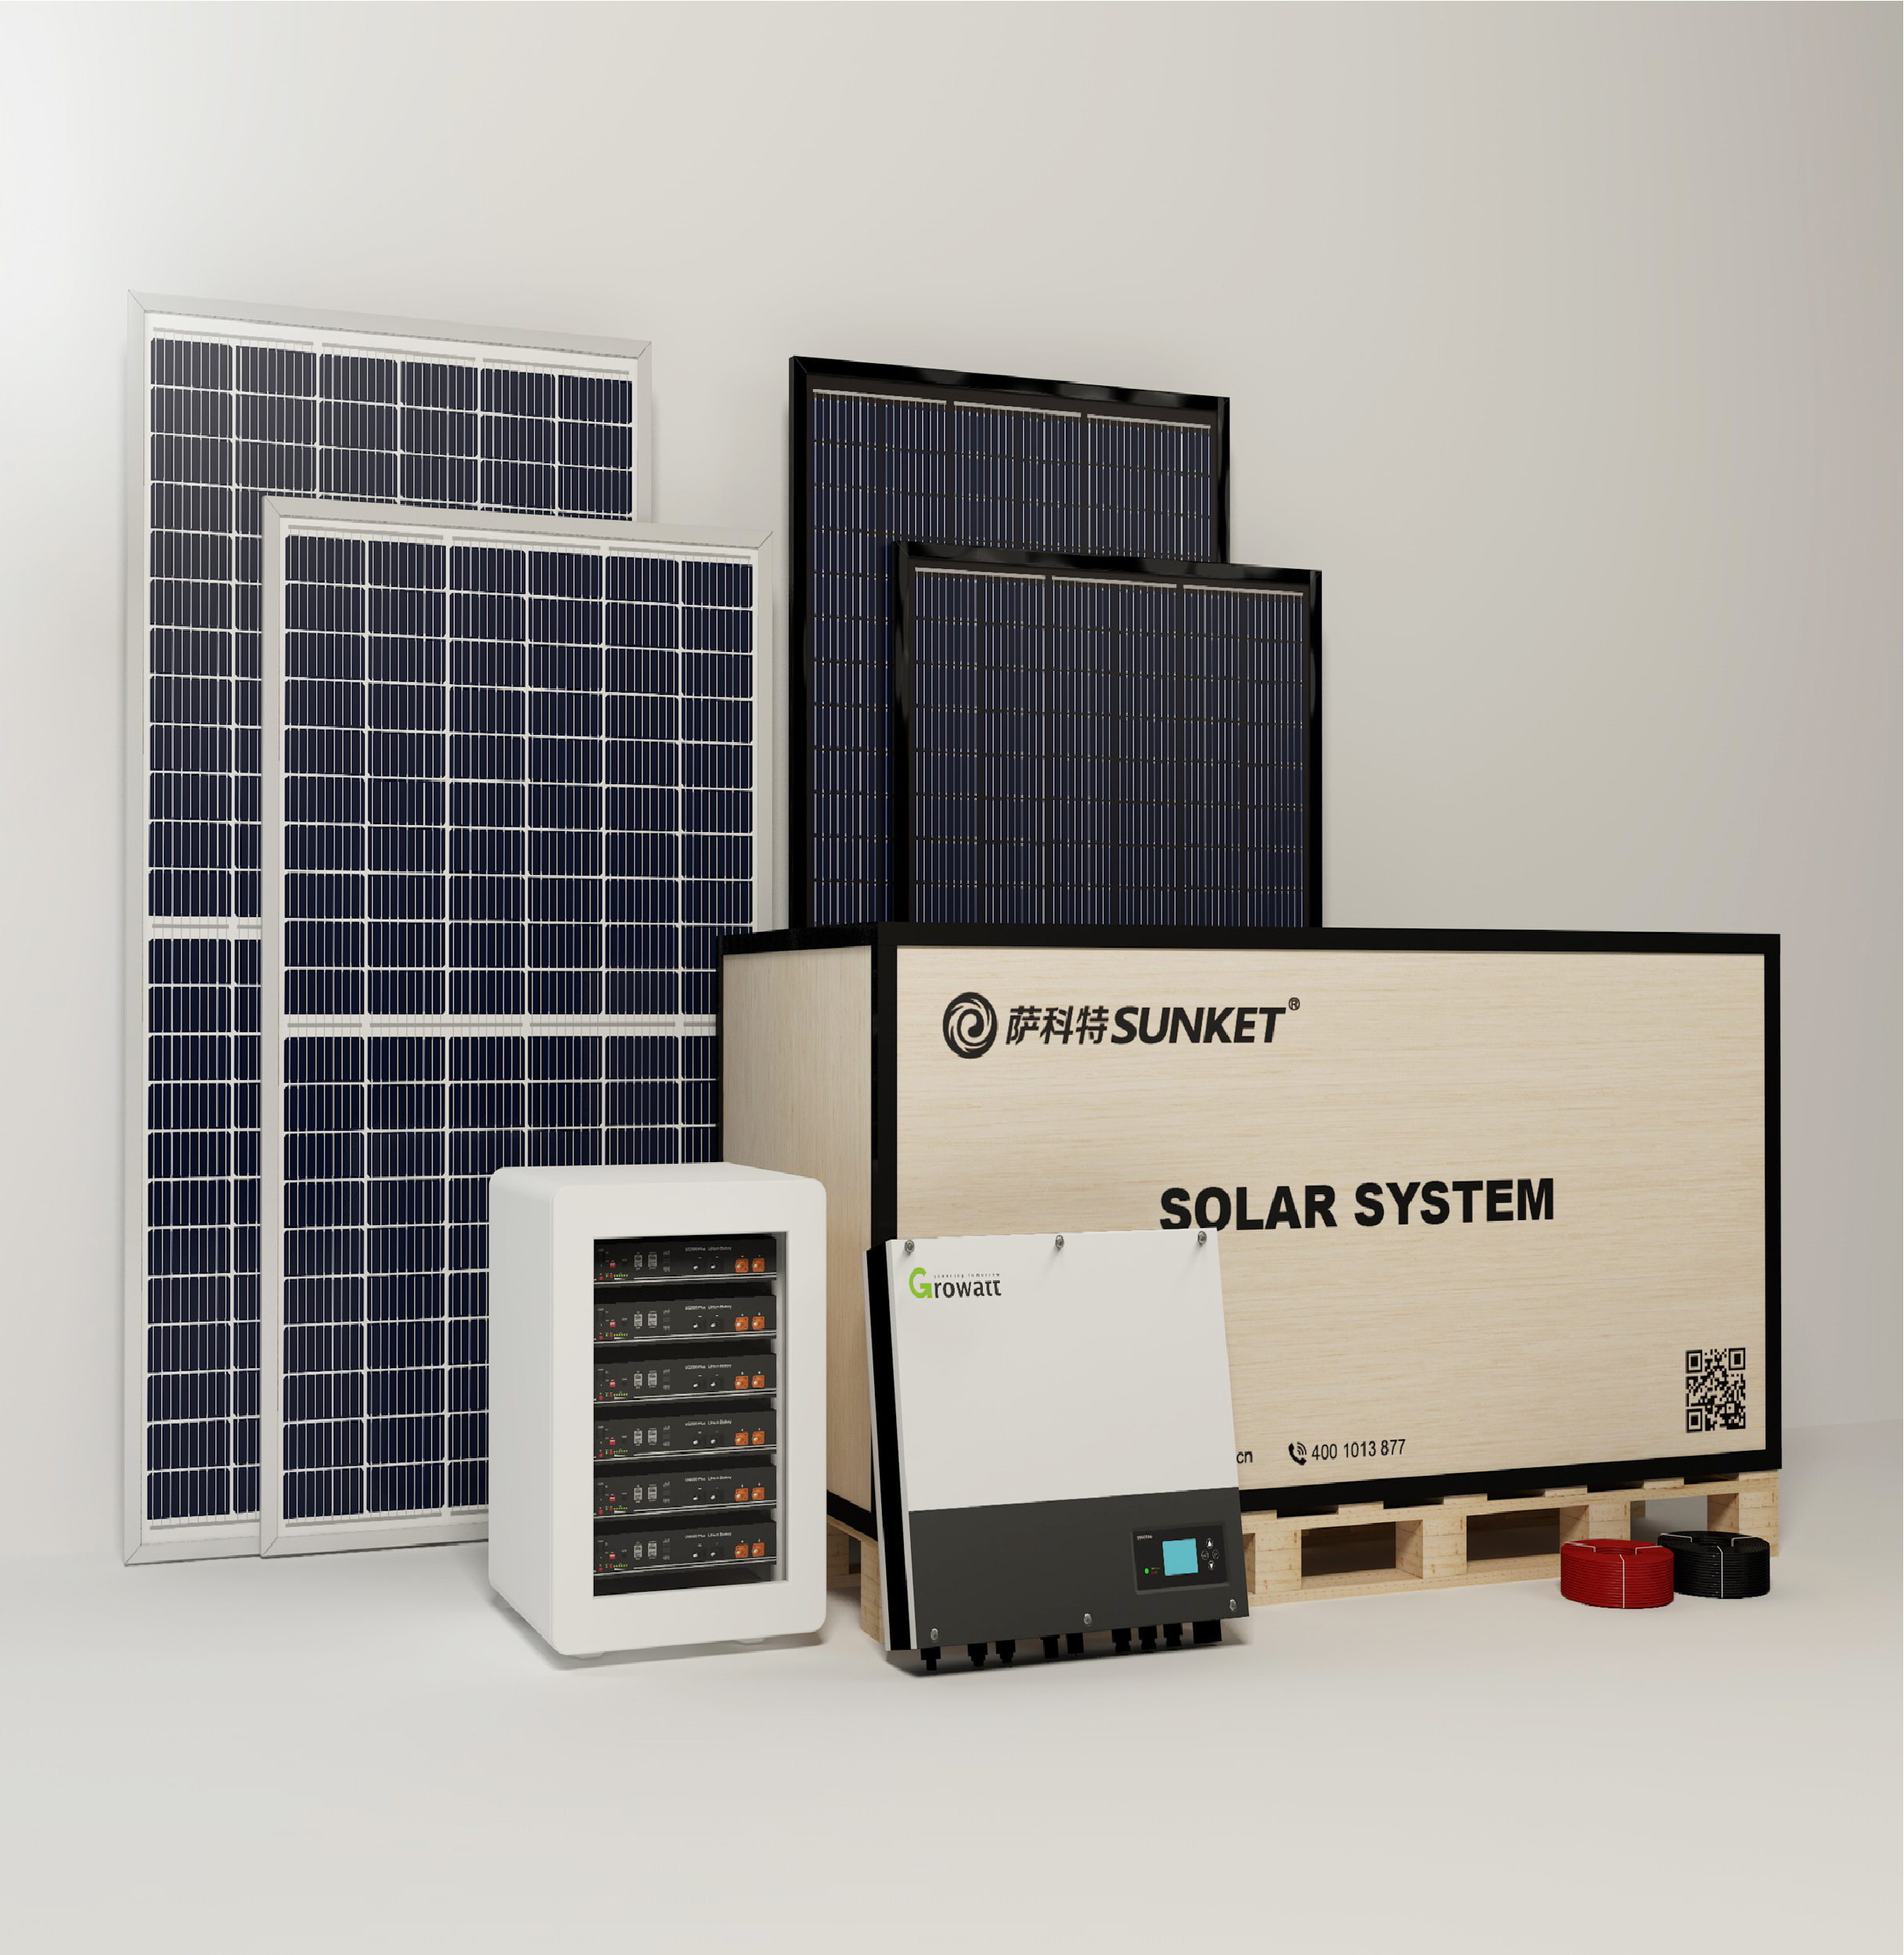 Sistema de energía solar de 3kw 5kw OFF OFF DE OFF OFF